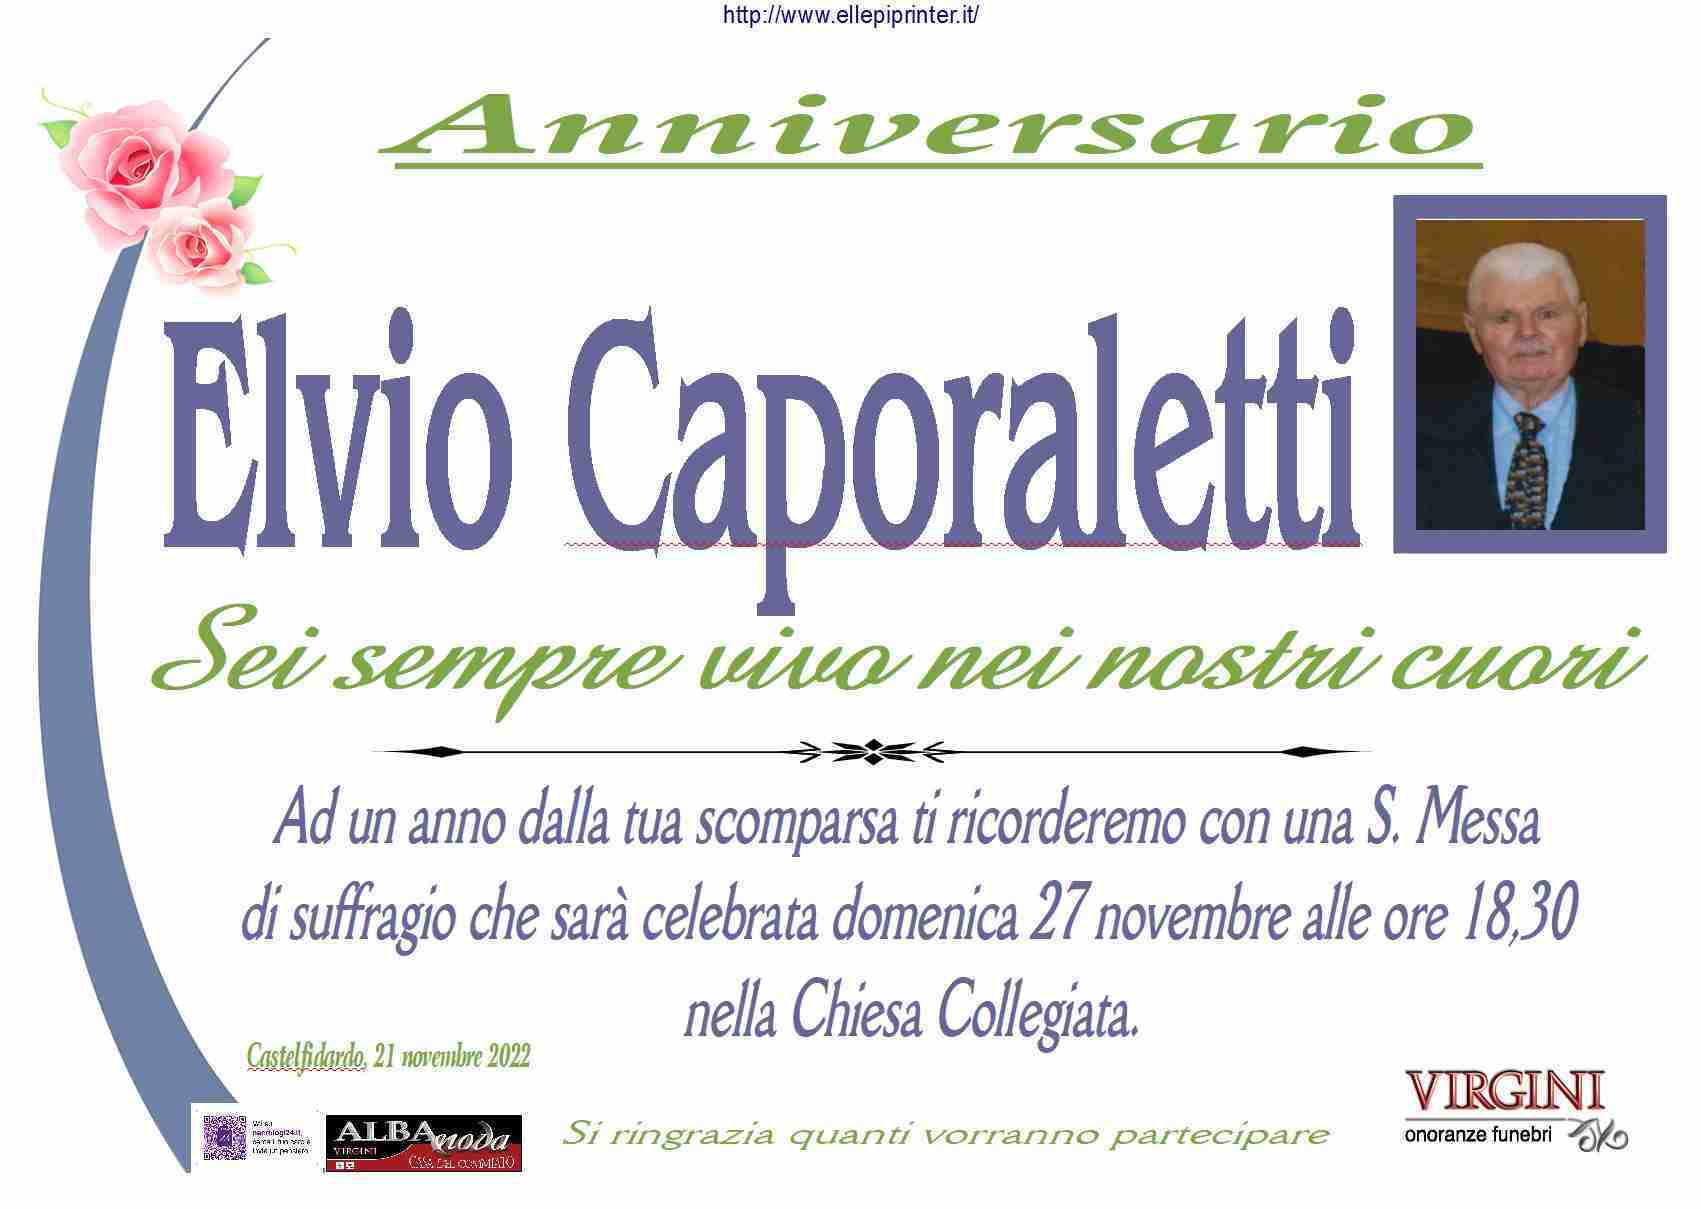 Elvio Caporaletti